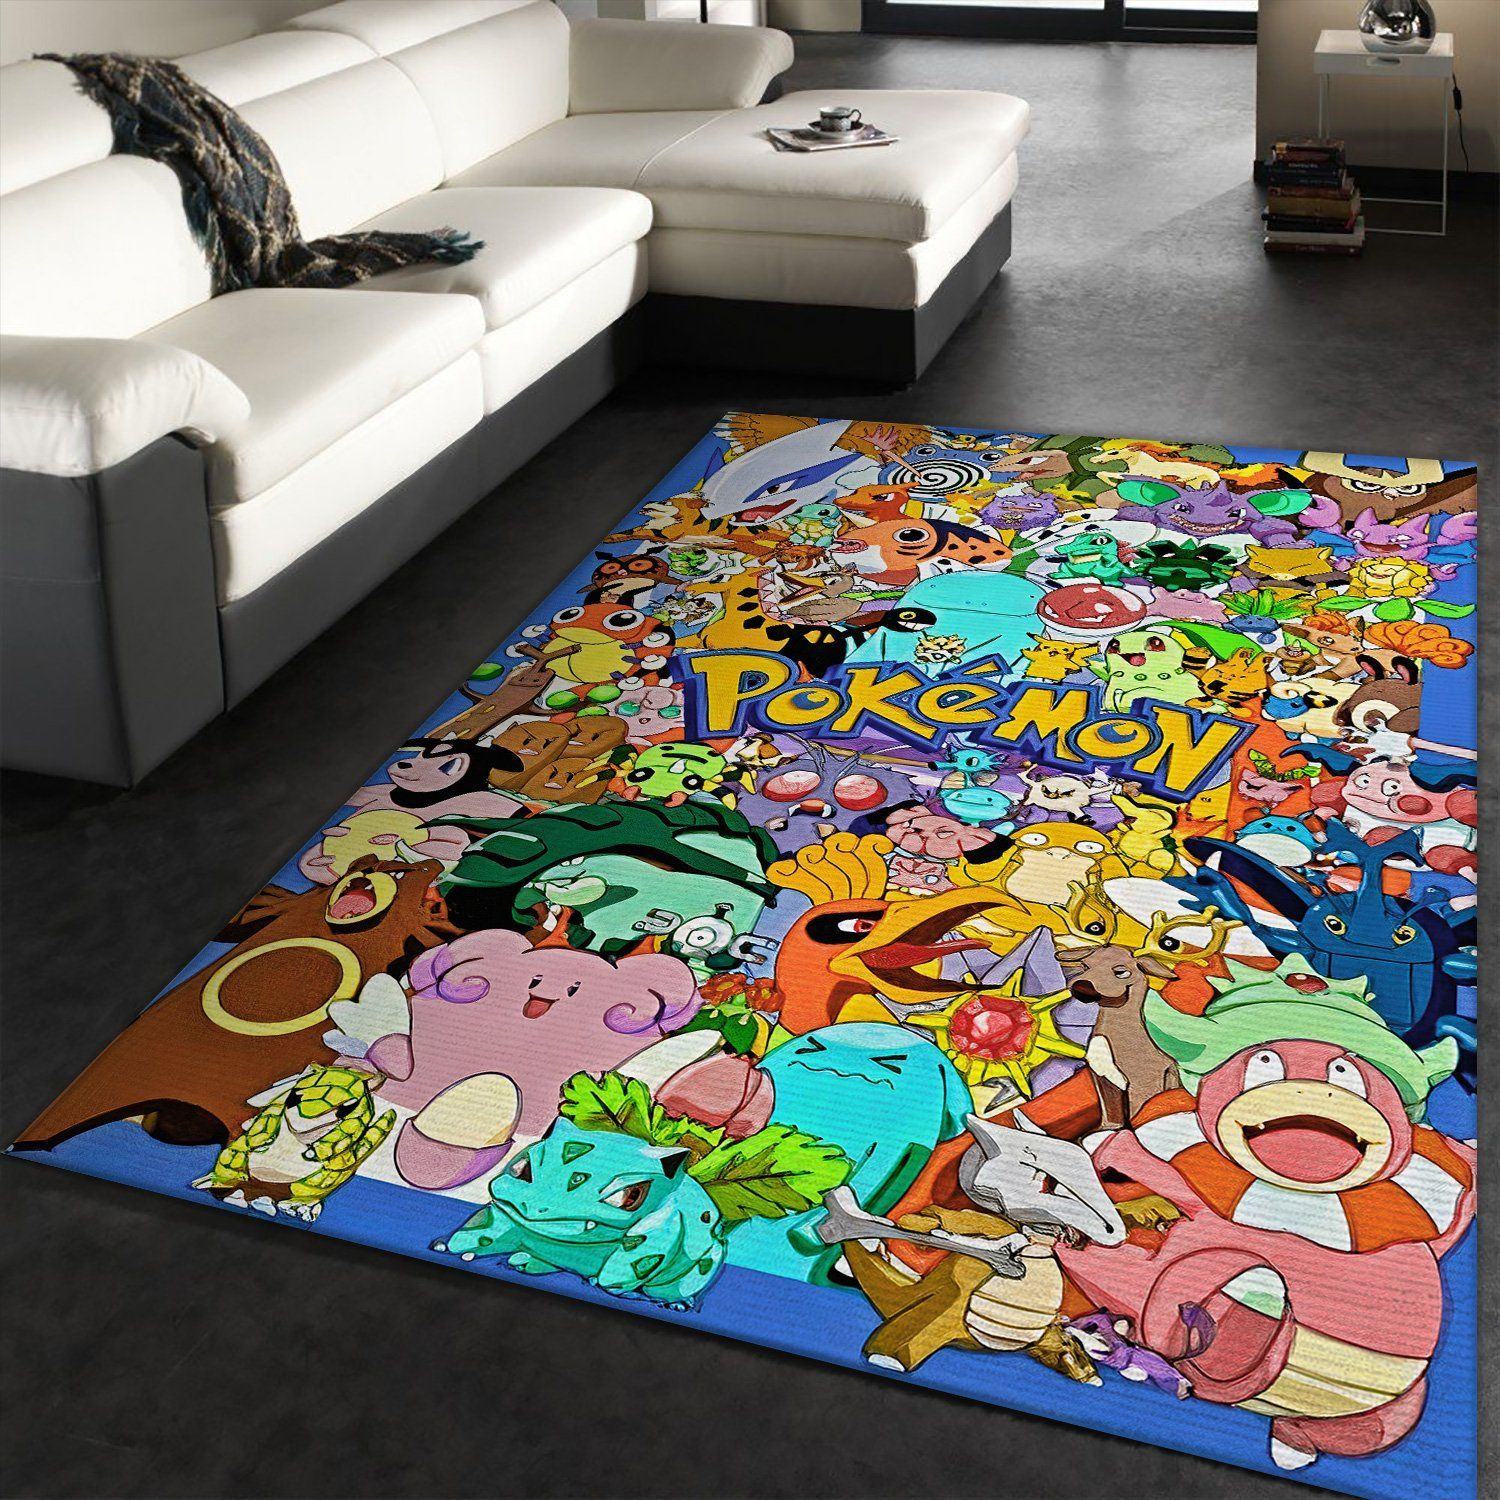 pokemon family anime movies teppich wohnzimmer kchenteppich teppichboden carpet mat0usaz